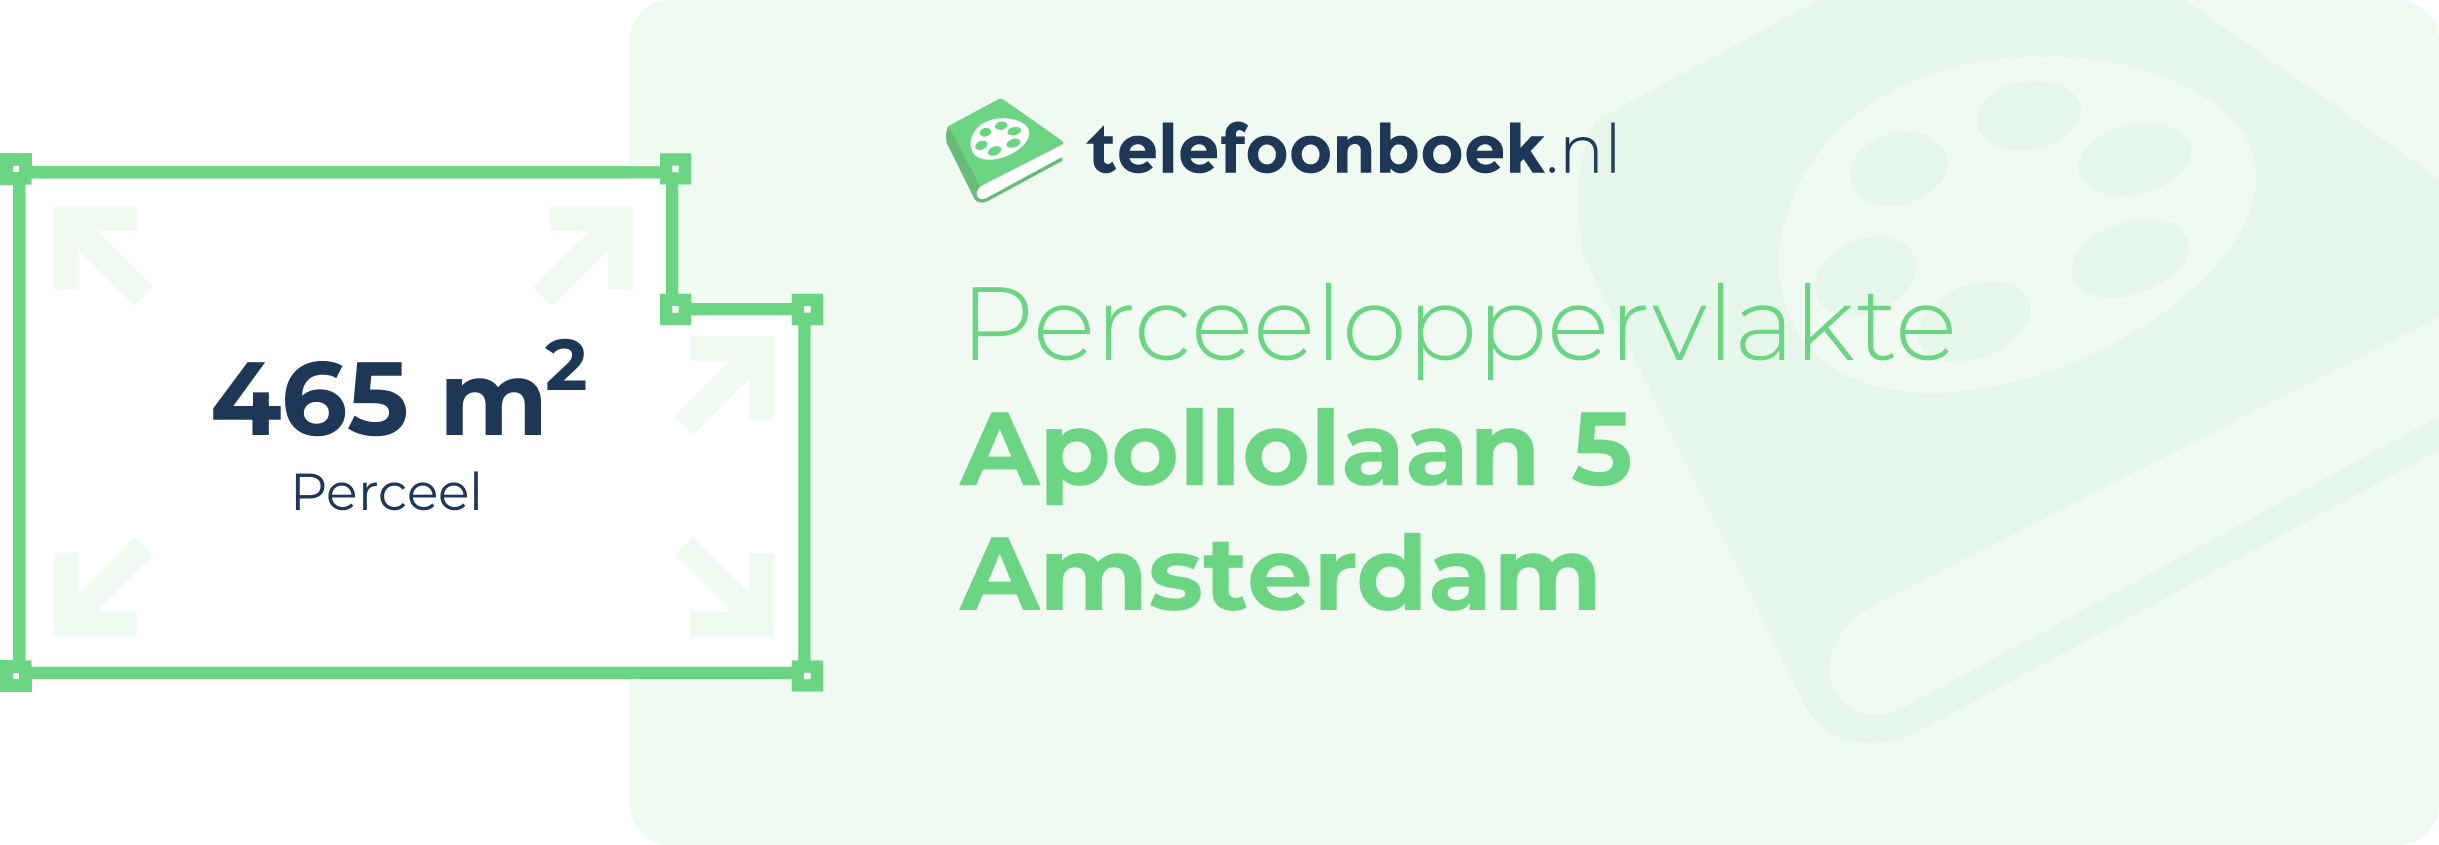 Perceeloppervlakte Apollolaan 5 Amsterdam